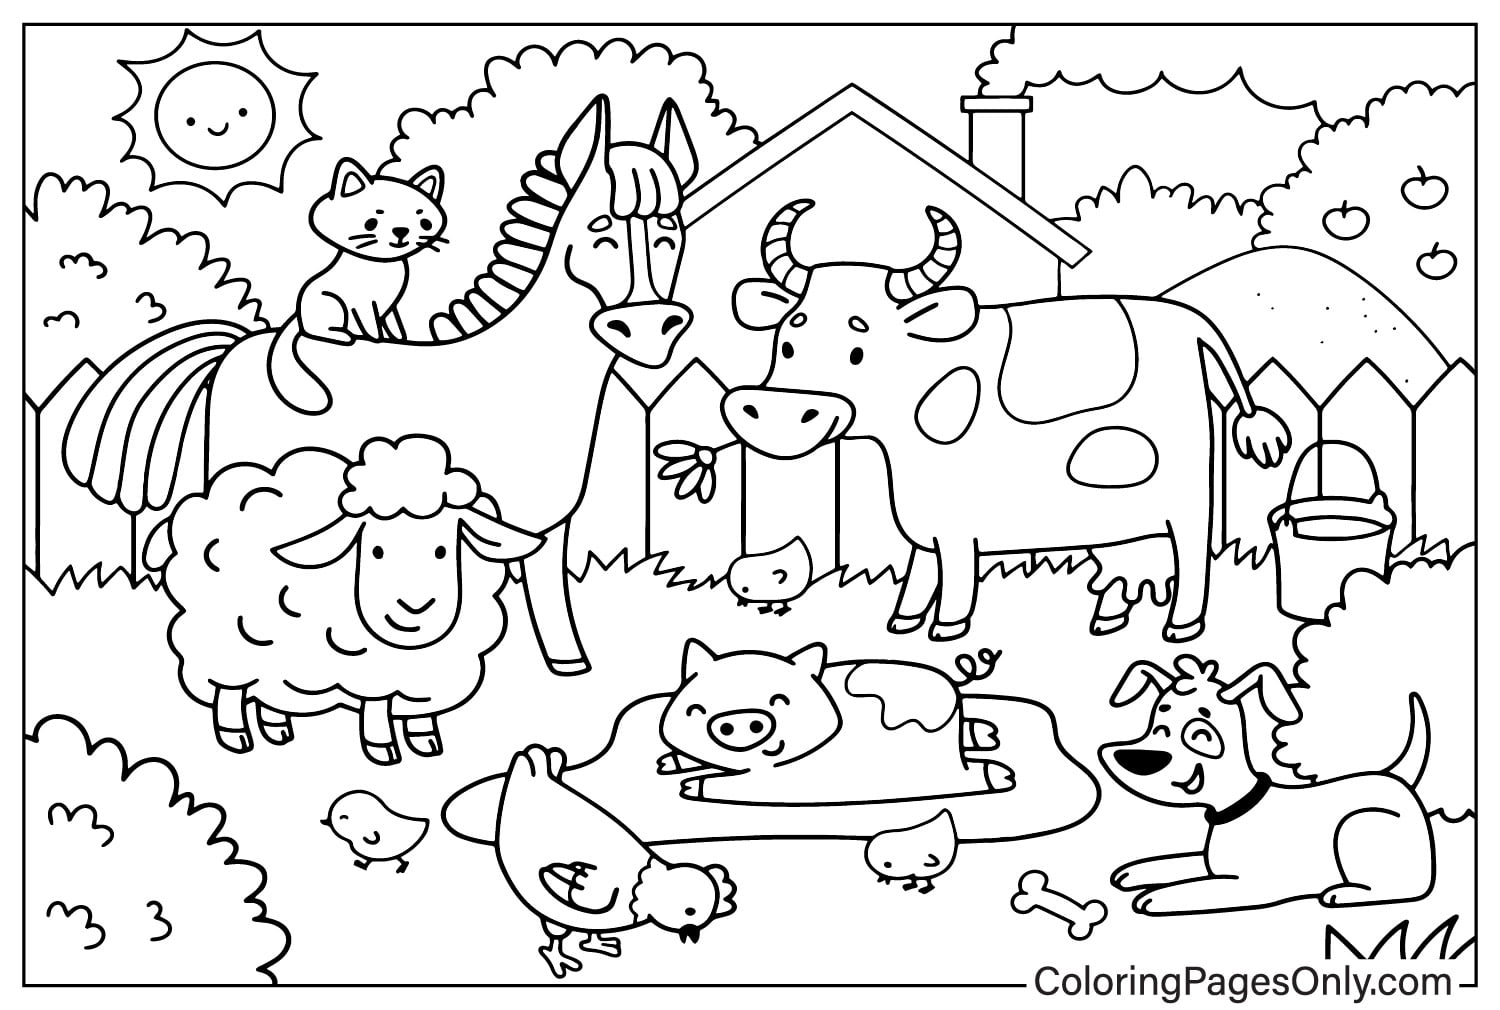 Animaux Ferme Doodle Ferme de Farm Animal